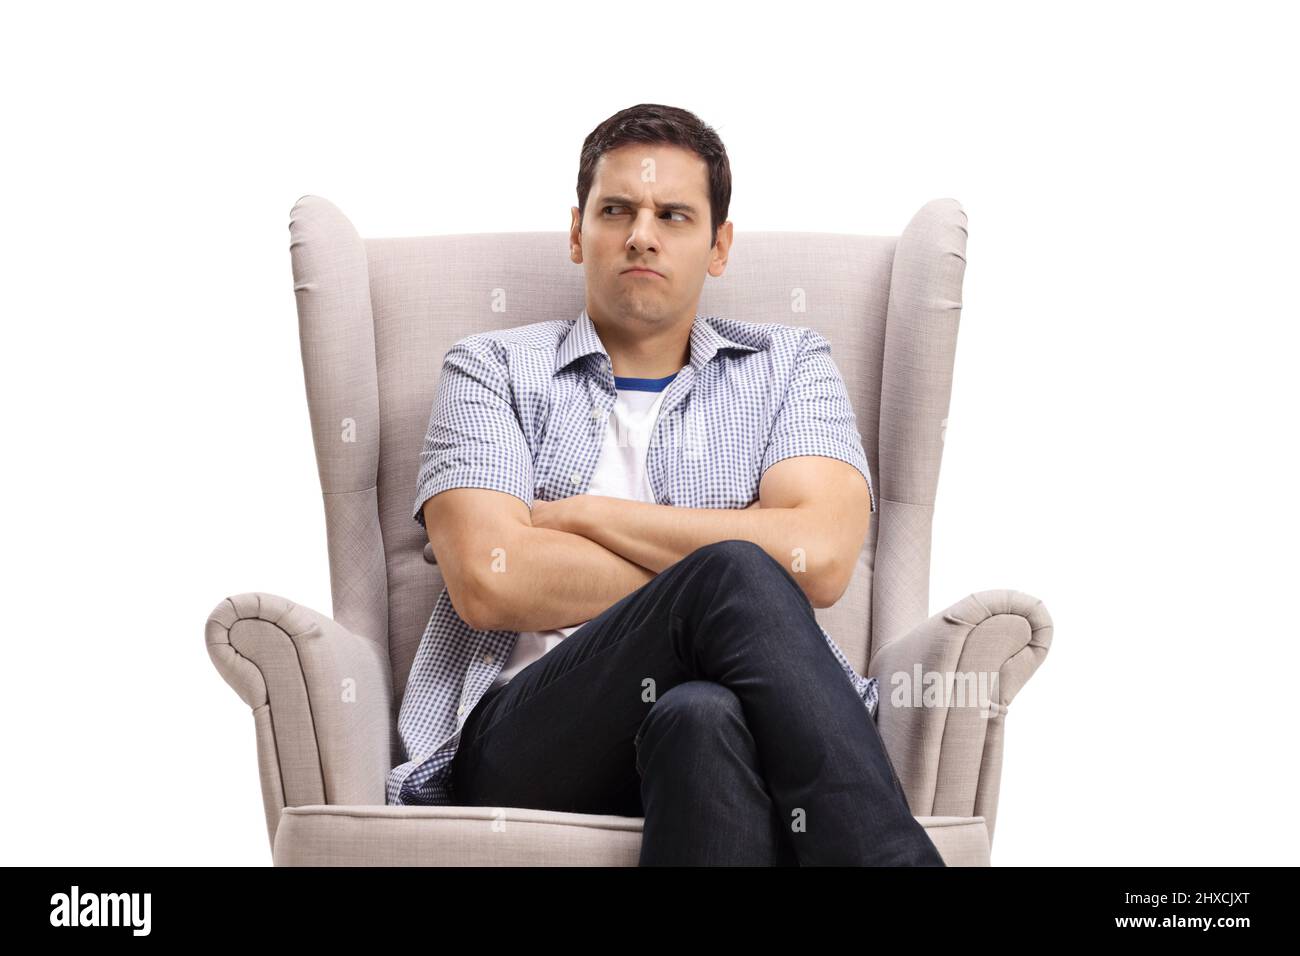 Jeune homme avec un visage en colère assis dans un fauteuil isolé sur fond blanc Banque D'Images